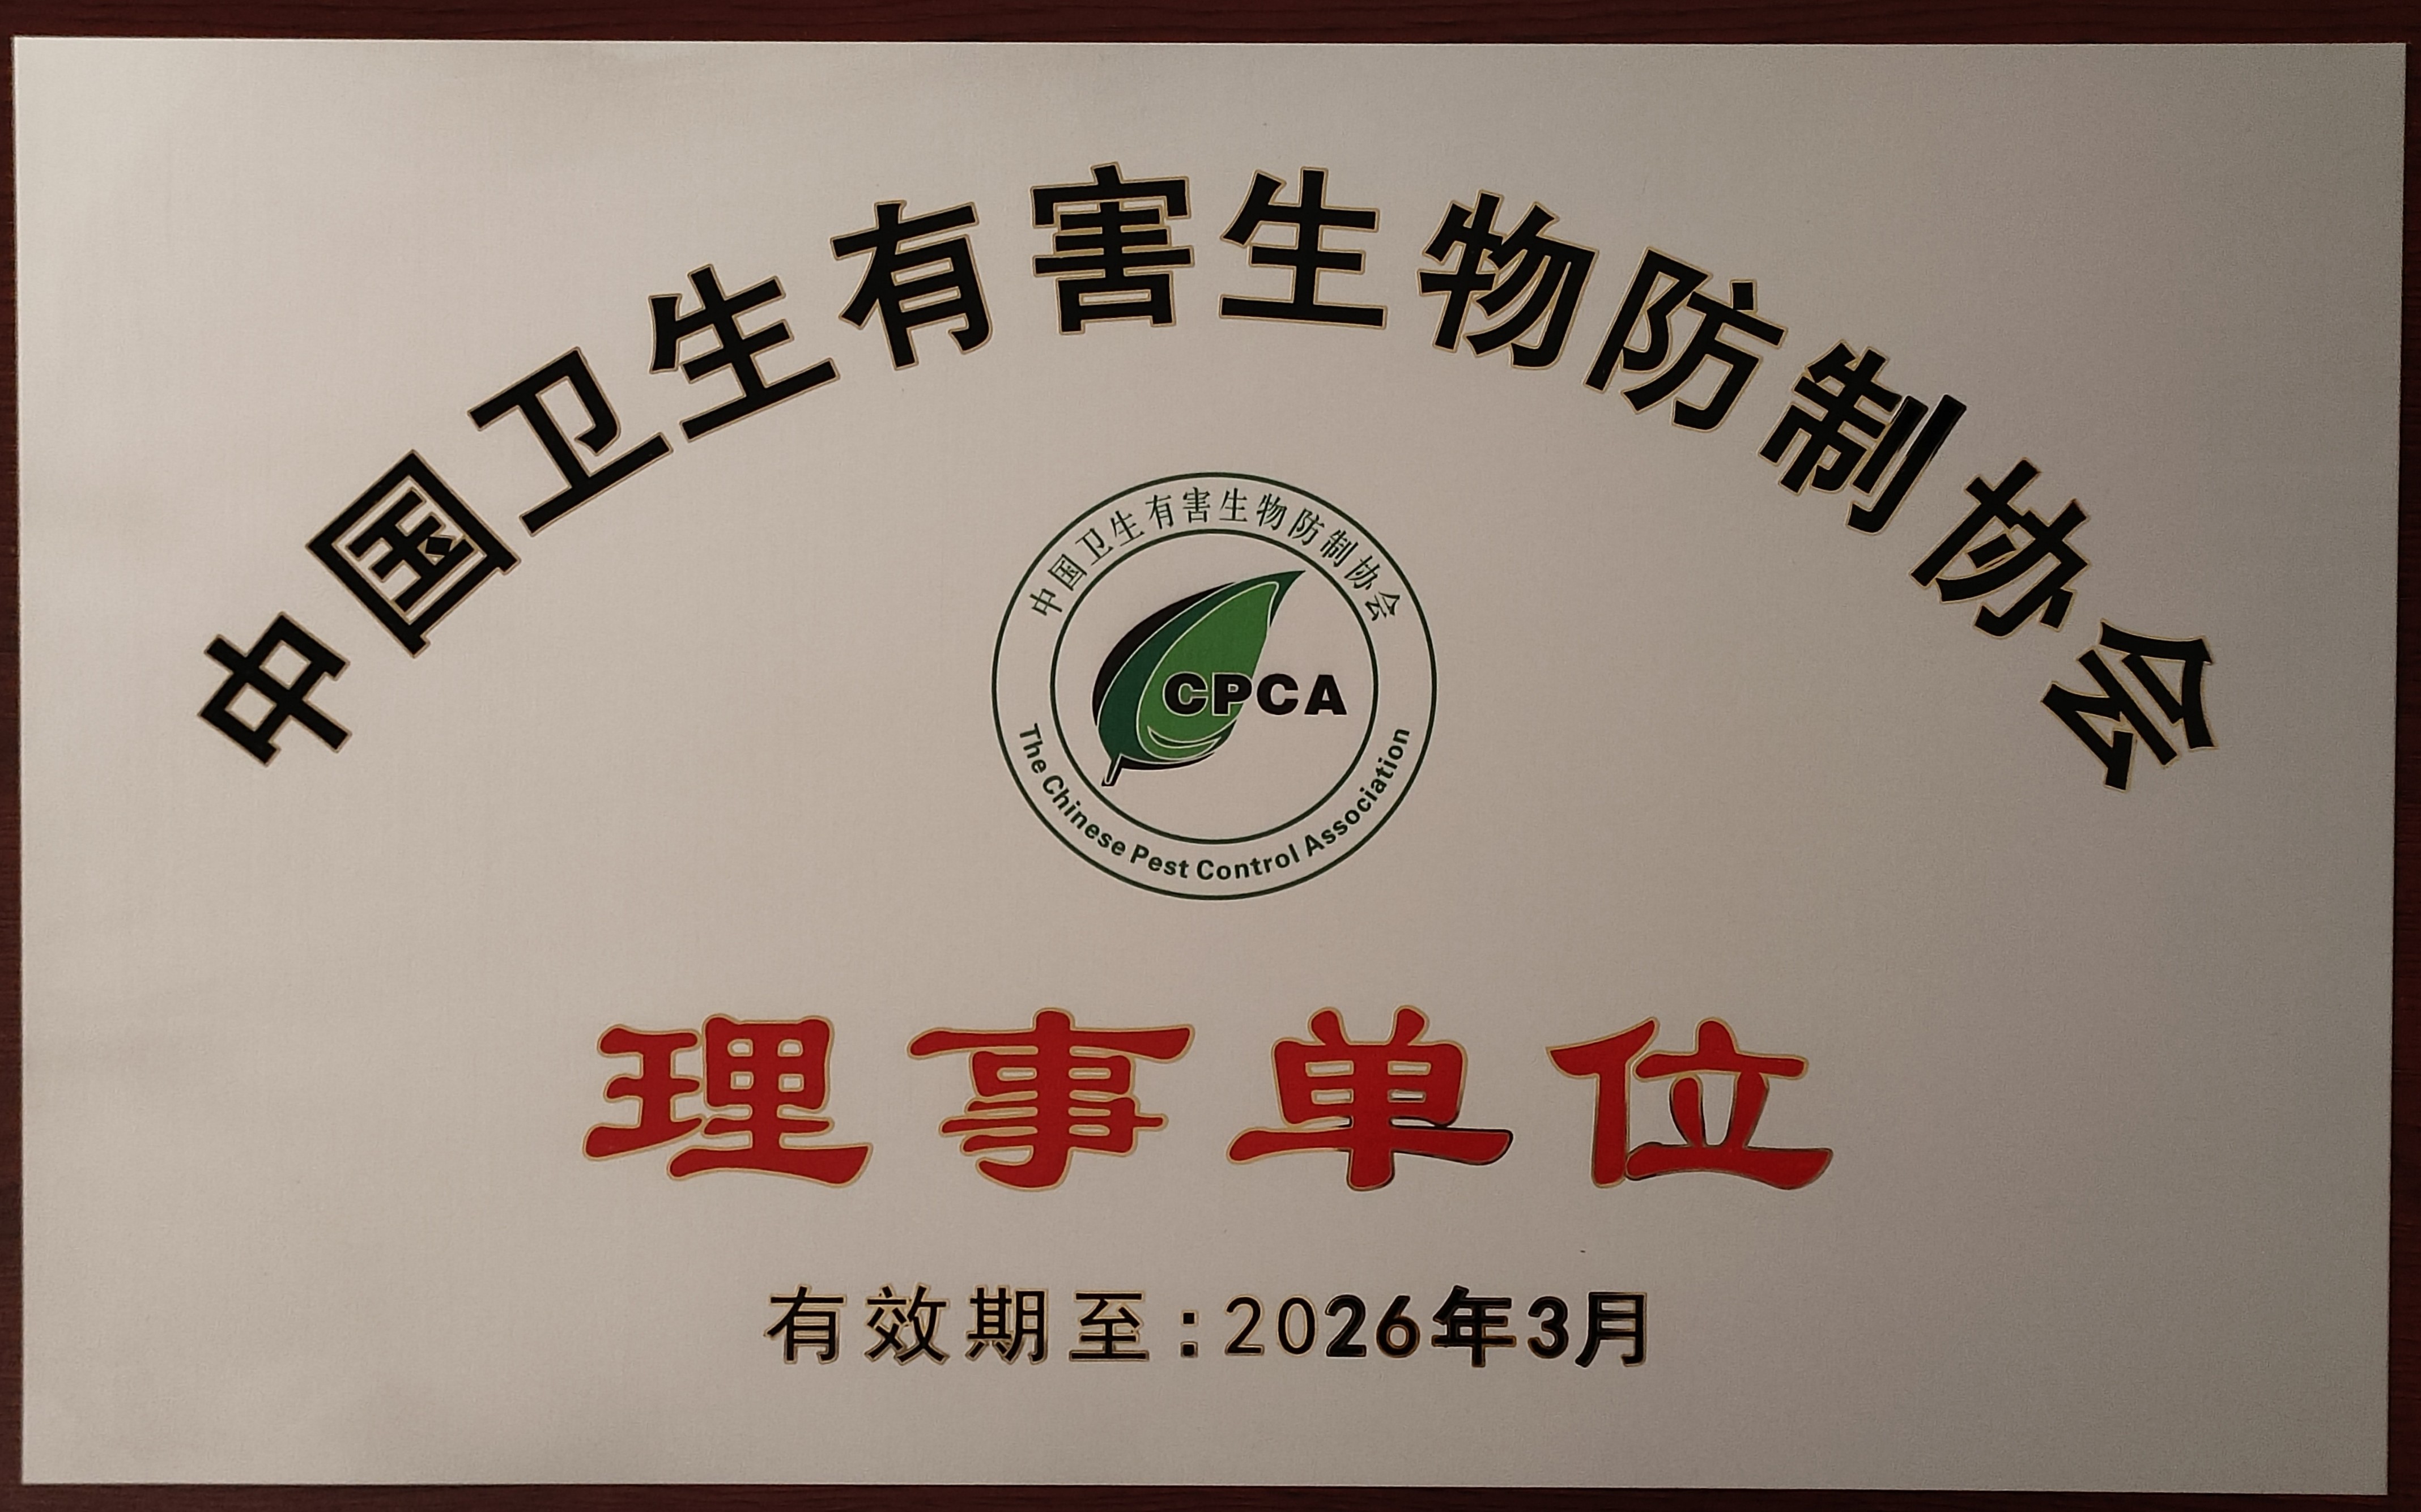 中國衛生有害生物防制協會理事單位